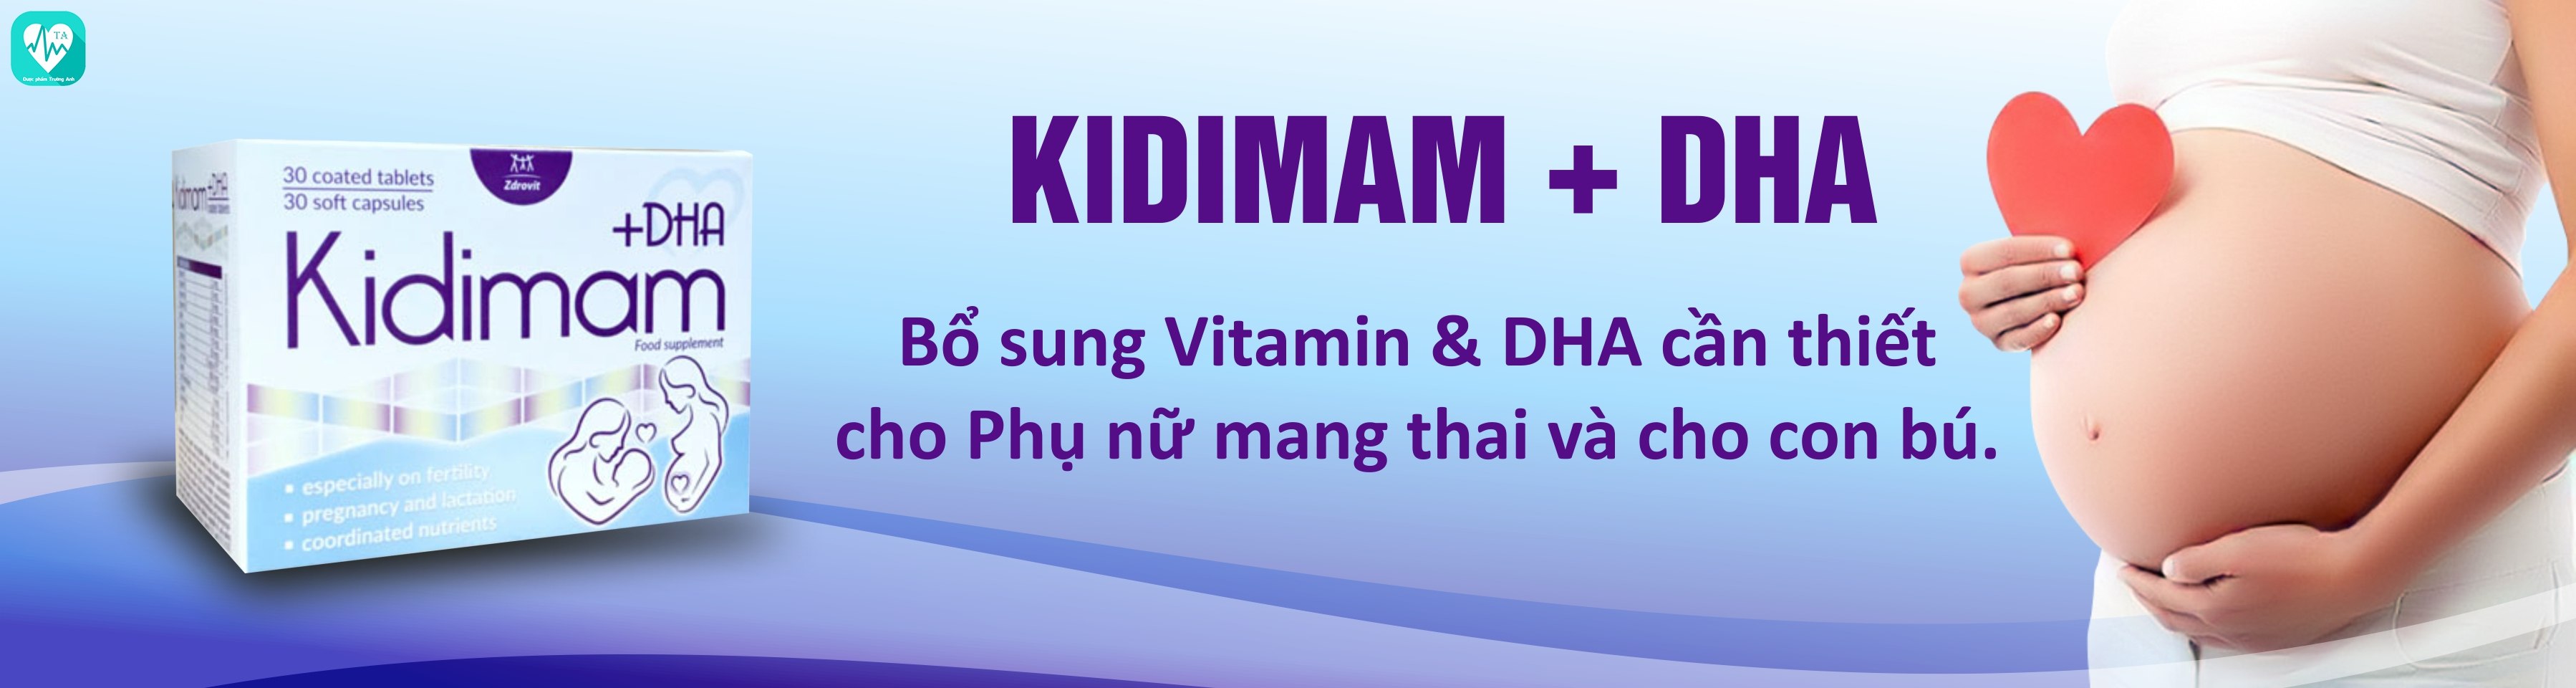 Kidimam+DHA - Giúp bổ sung vitamin và khoáng chất của Poland